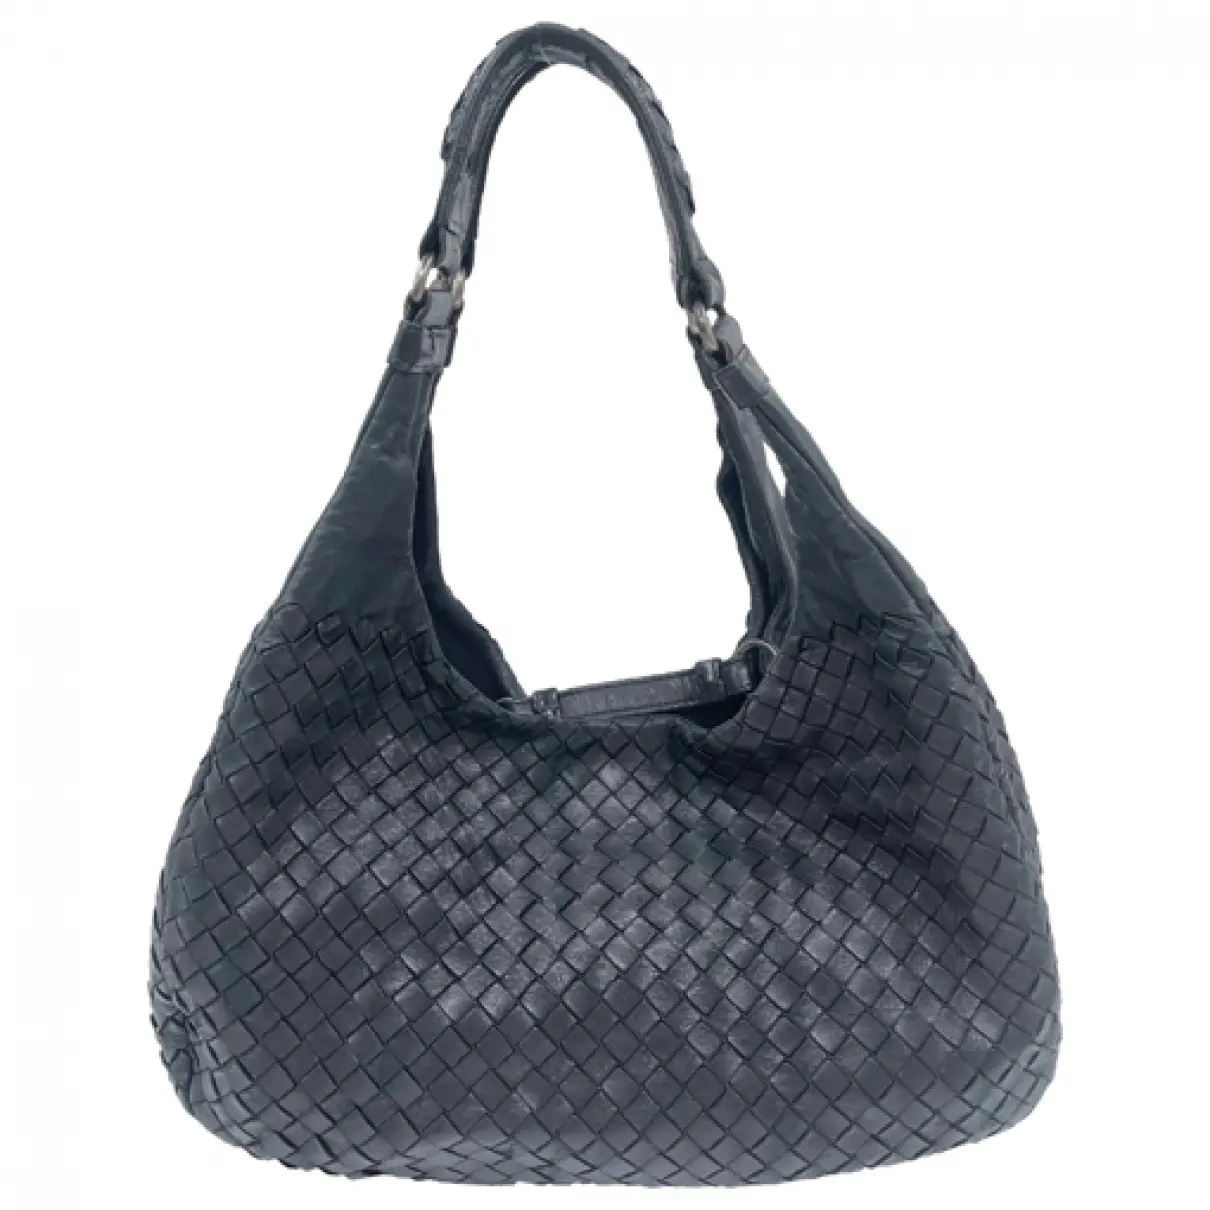 Hobo leather handbag